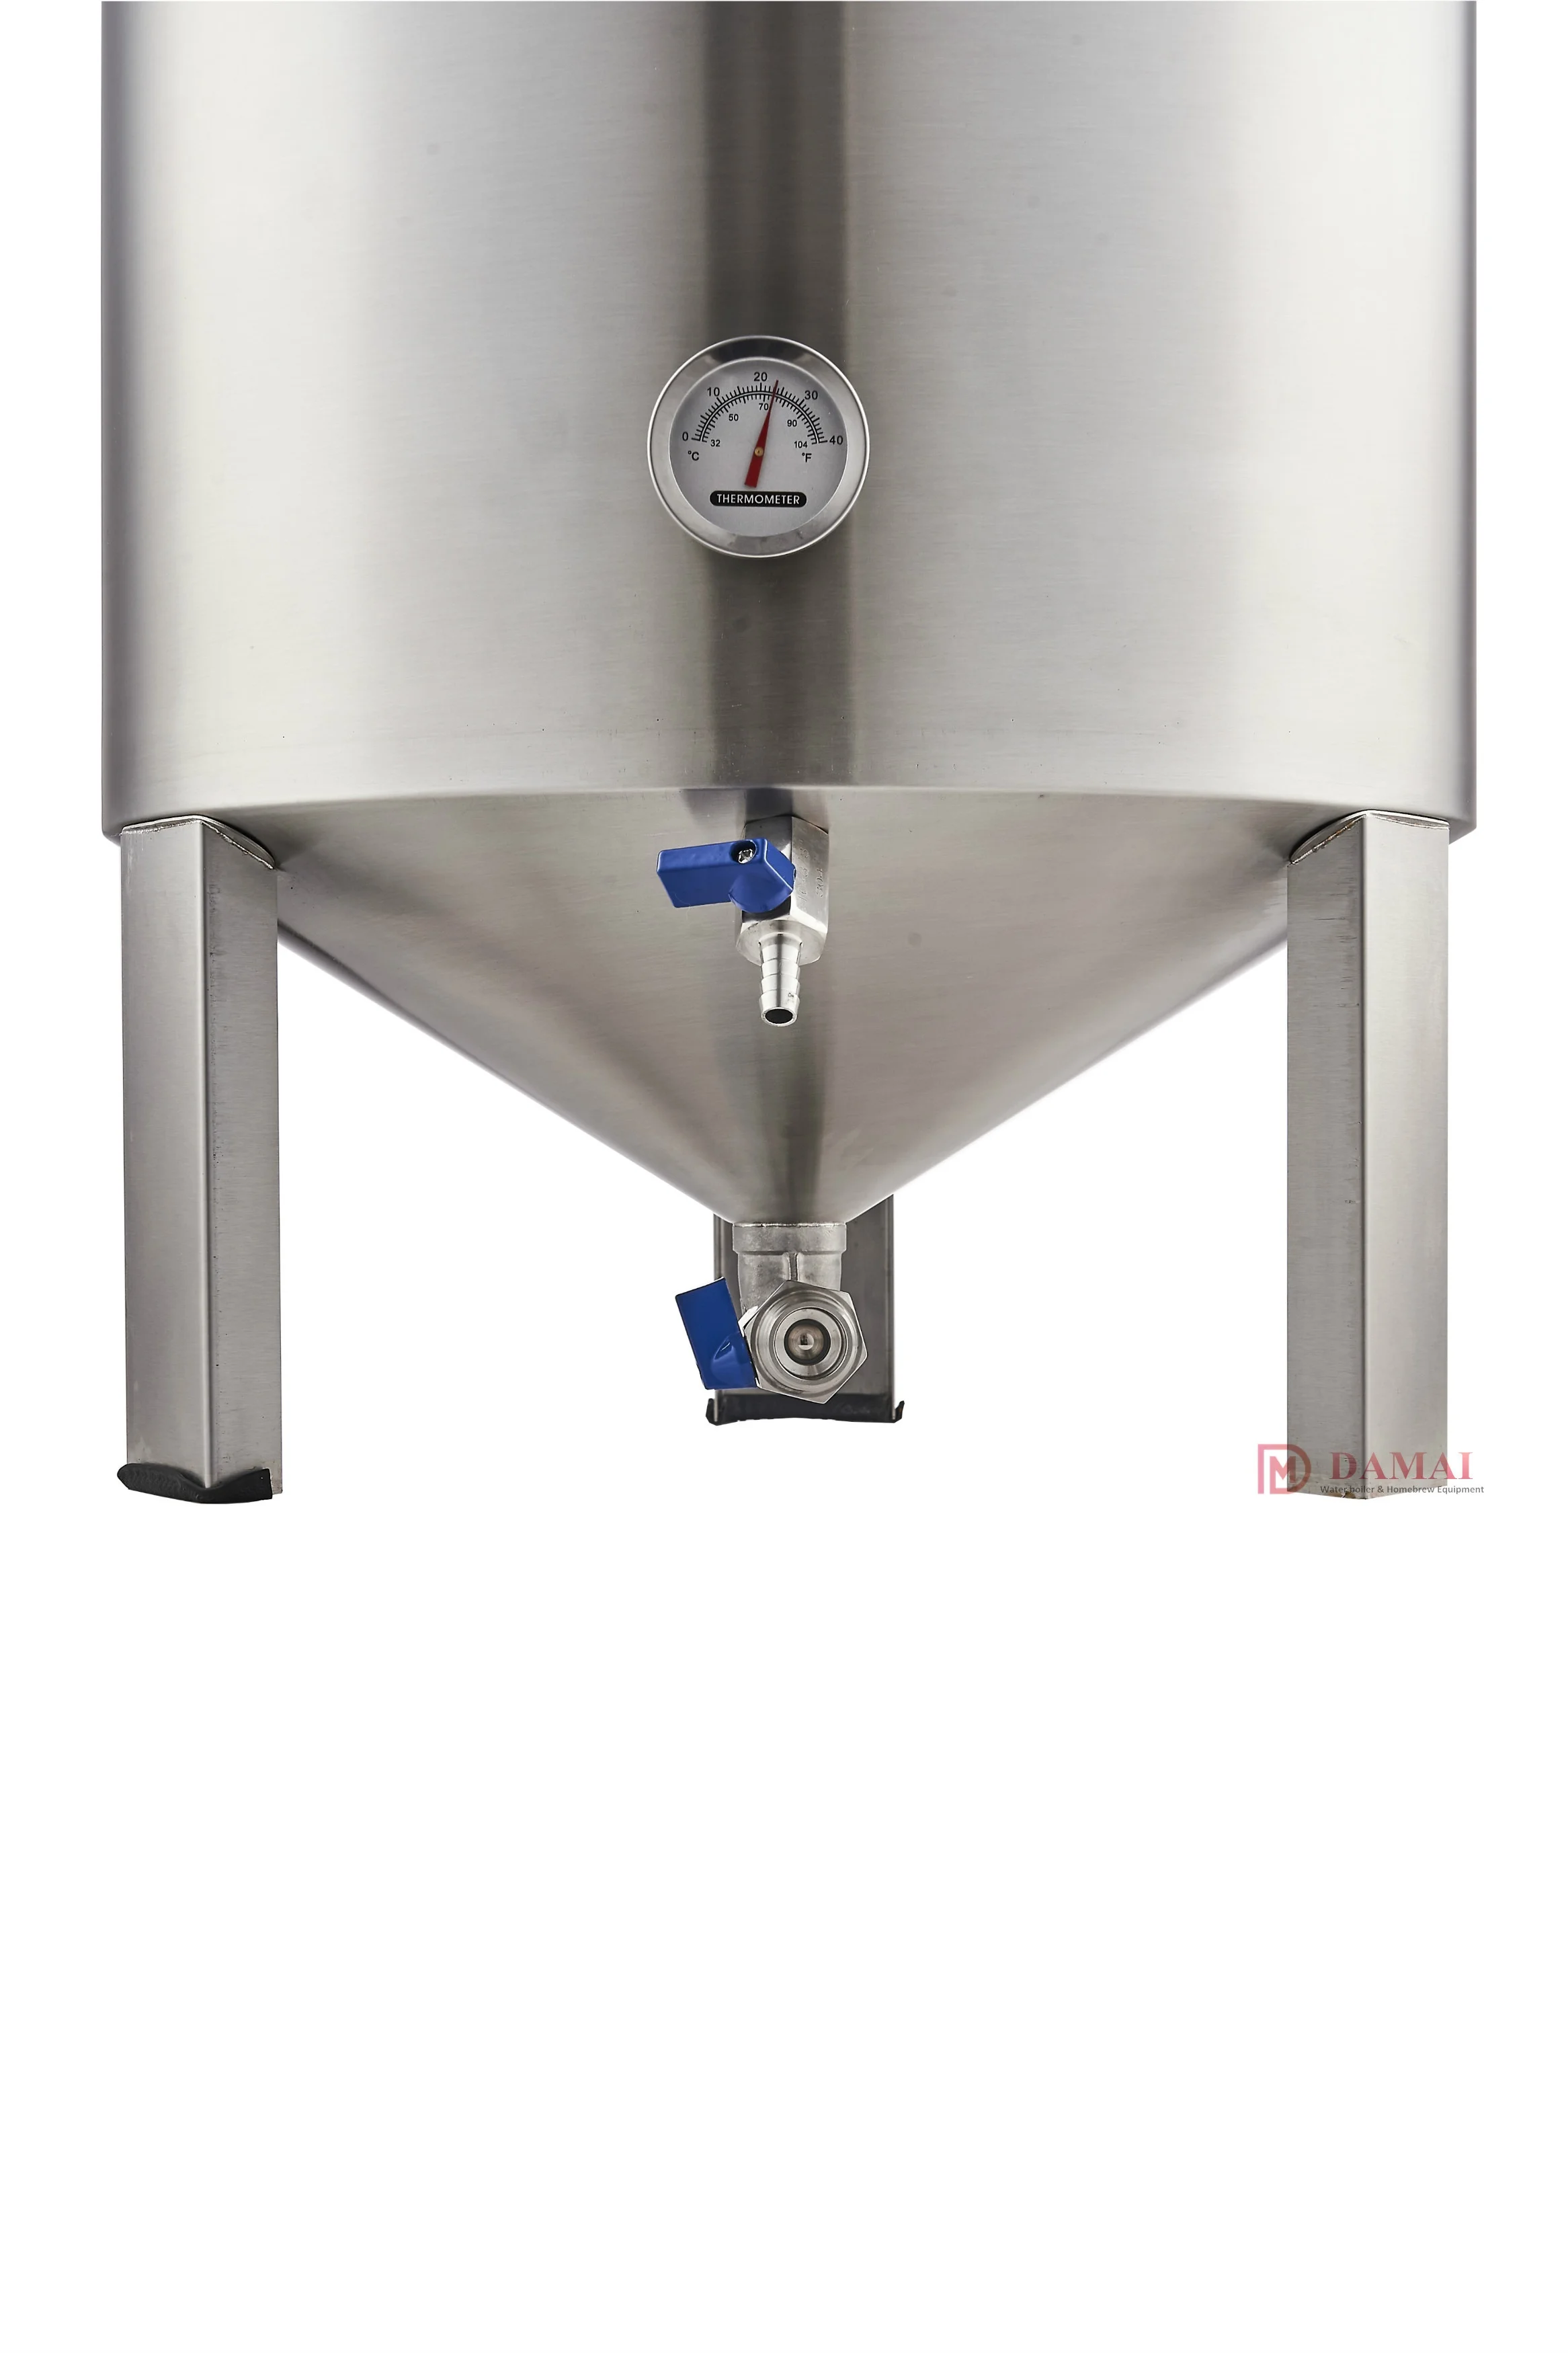 
60L fermentation tank for homebrew/ 304 stainless steel conical fermenter similar to guten/ fermenting equipment 